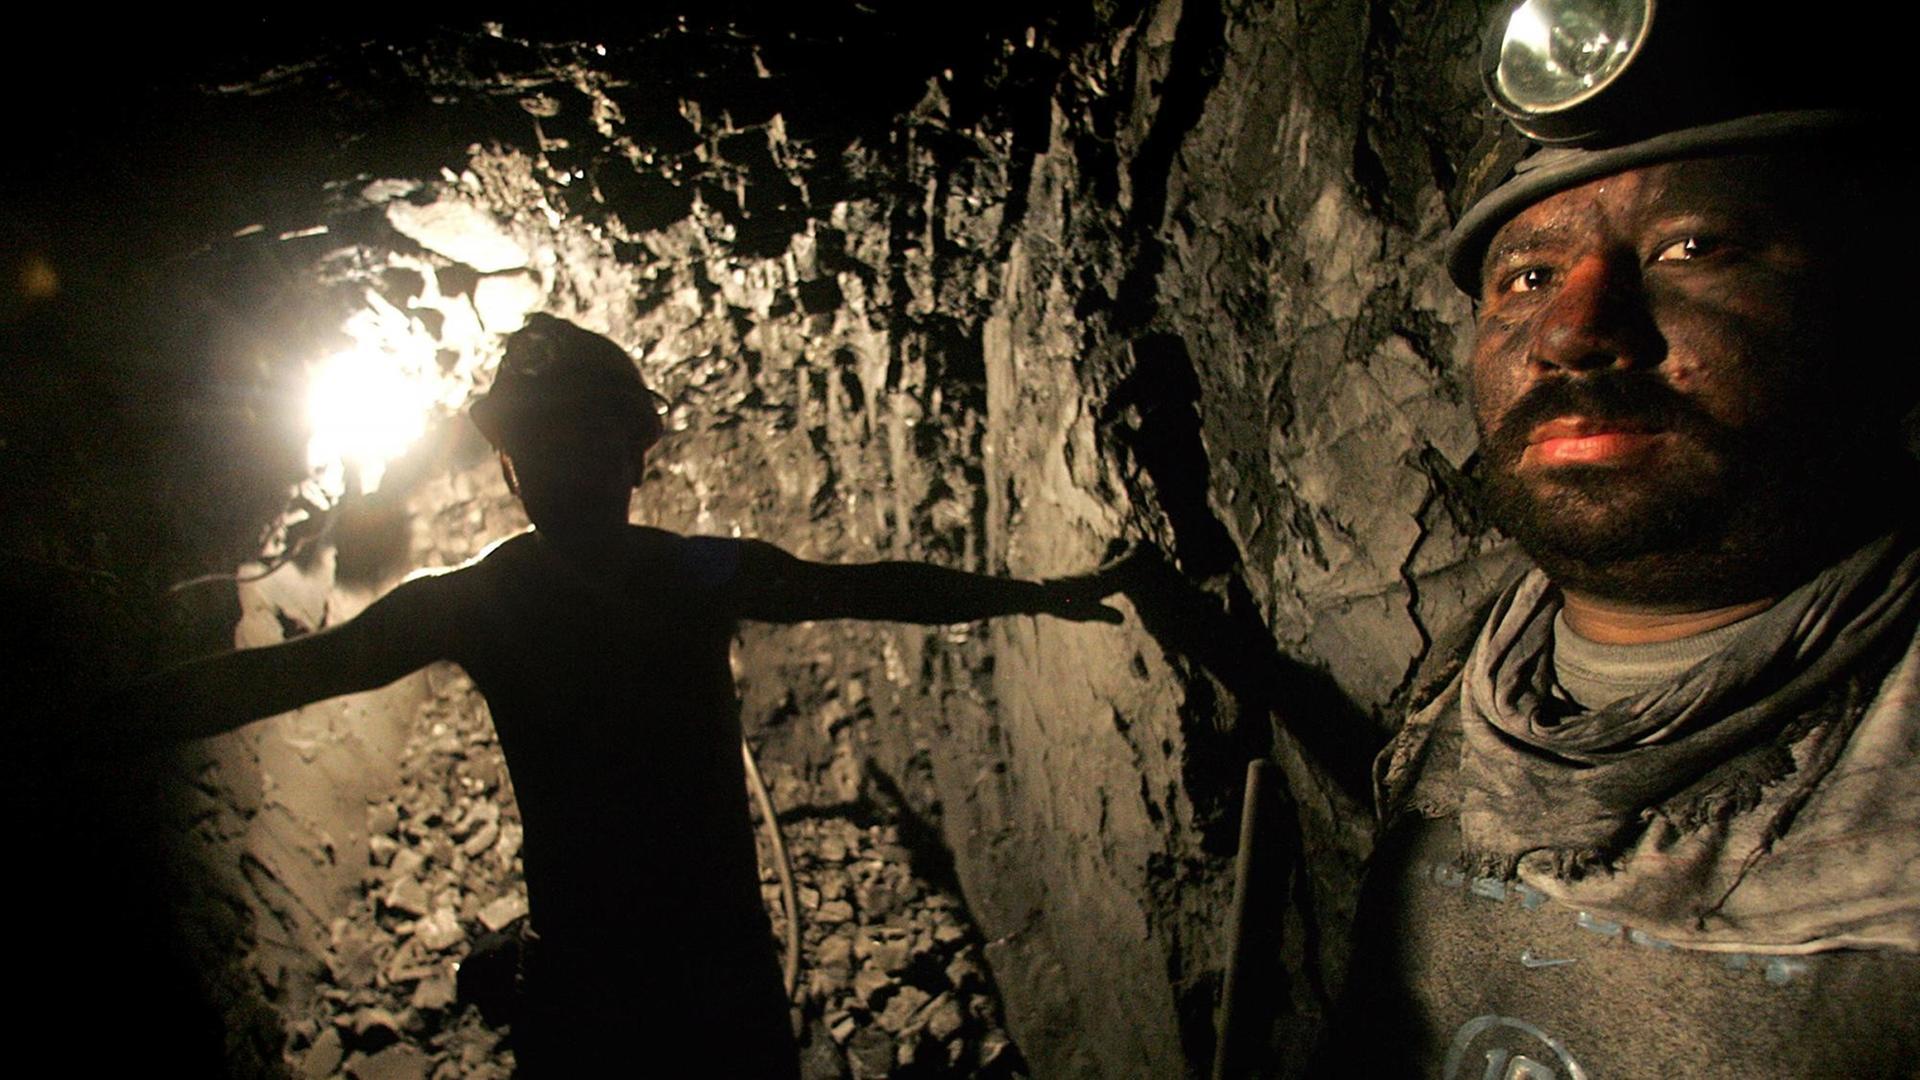 Minenarbeiter in einem Bergwerk in Kolumbien.